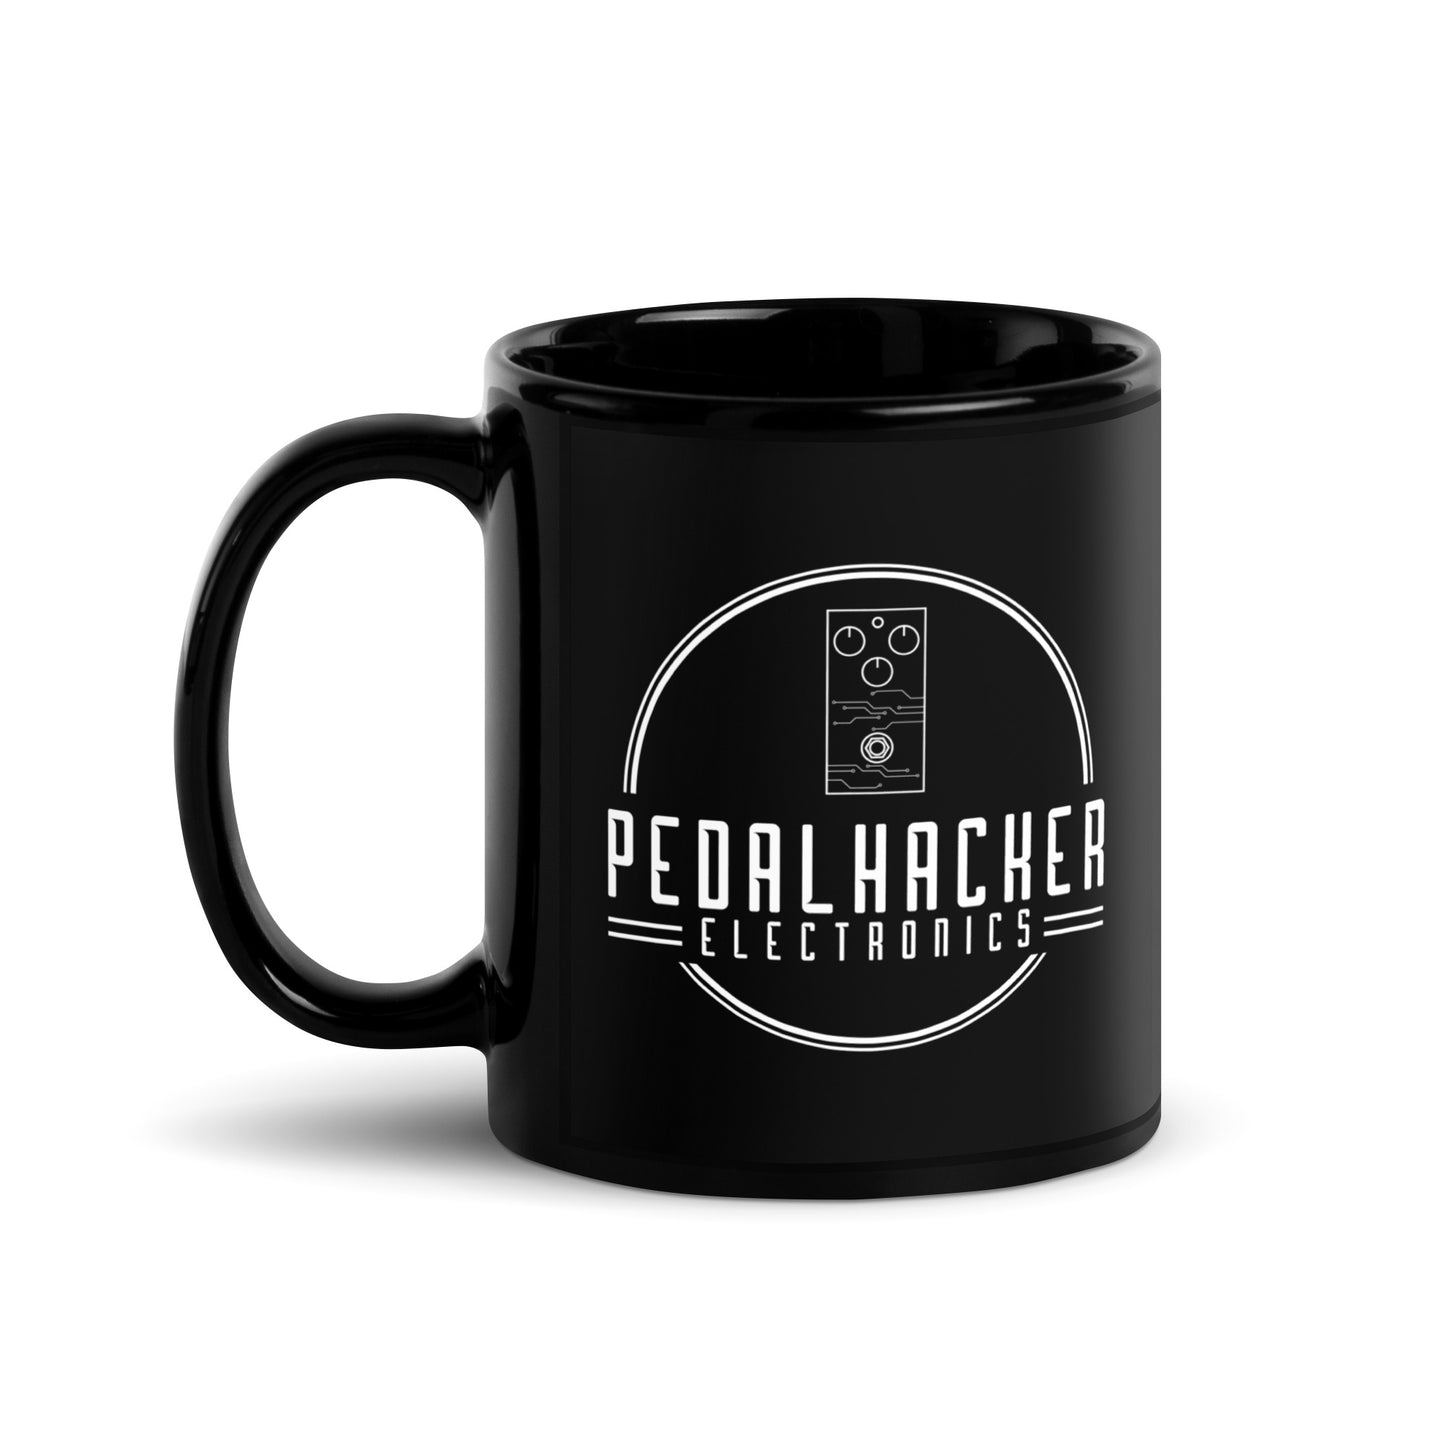 Pedalhacker Coffee Mug